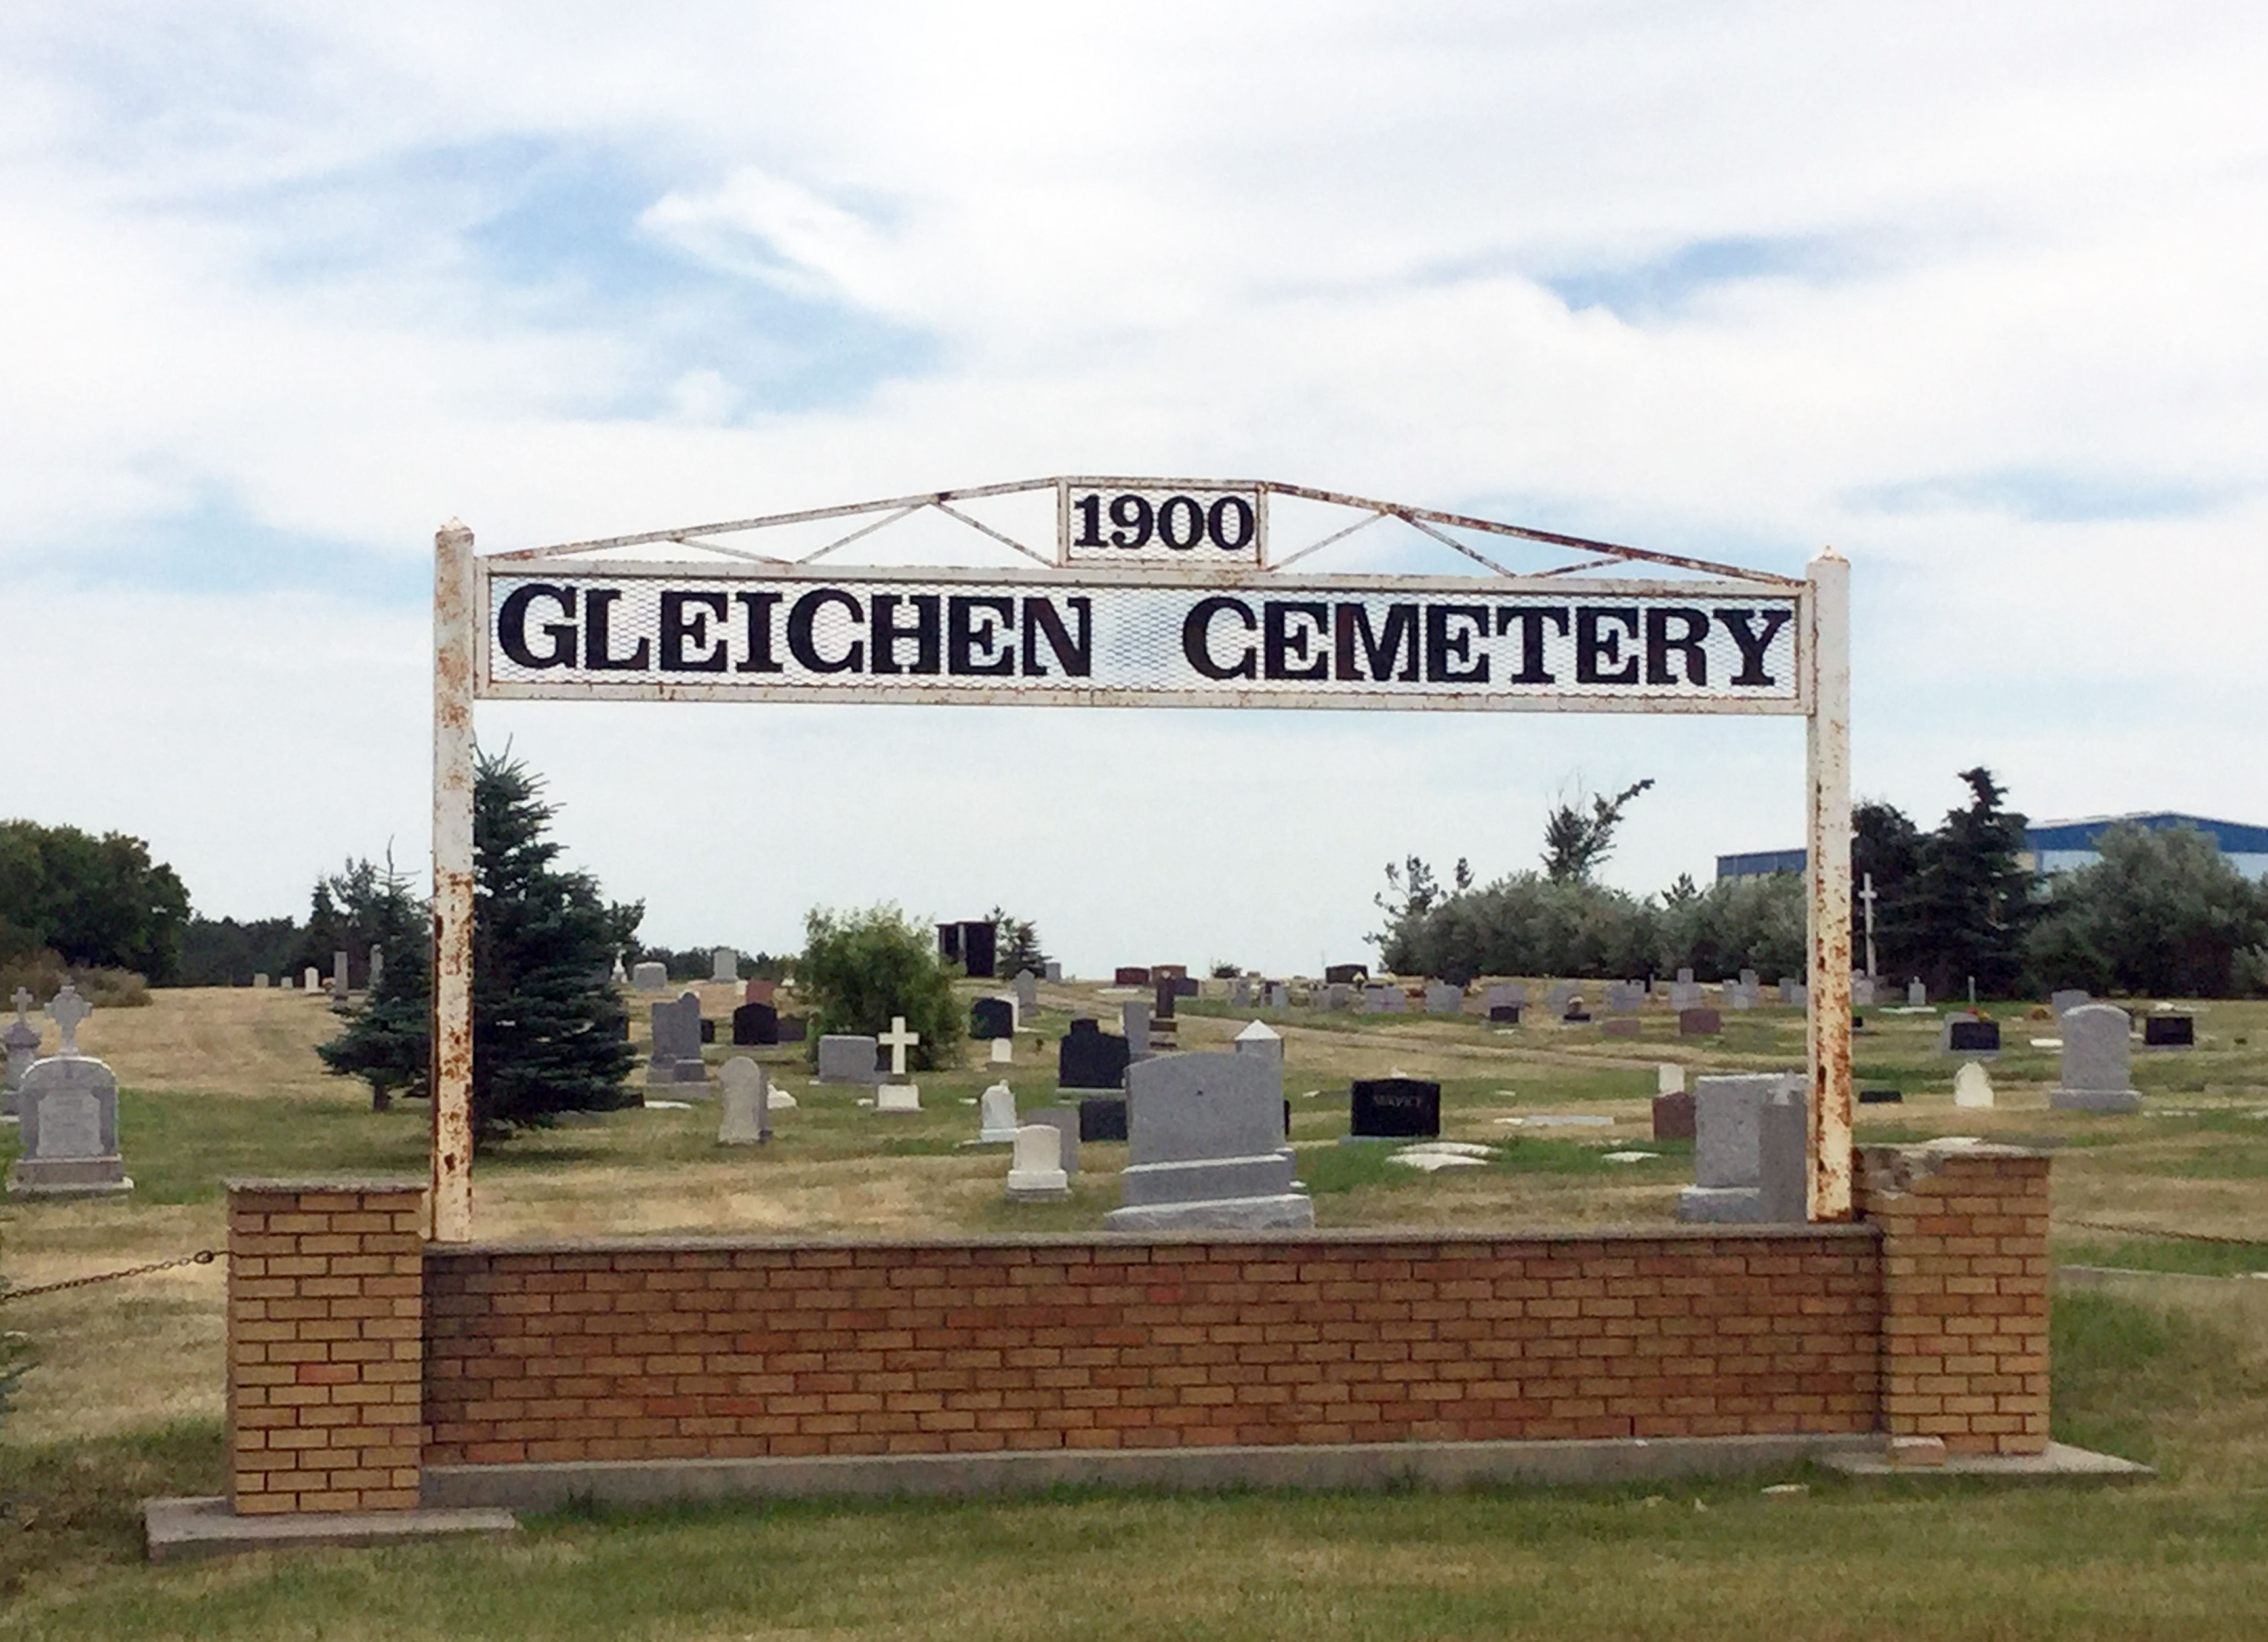 Gleichen Cemetery